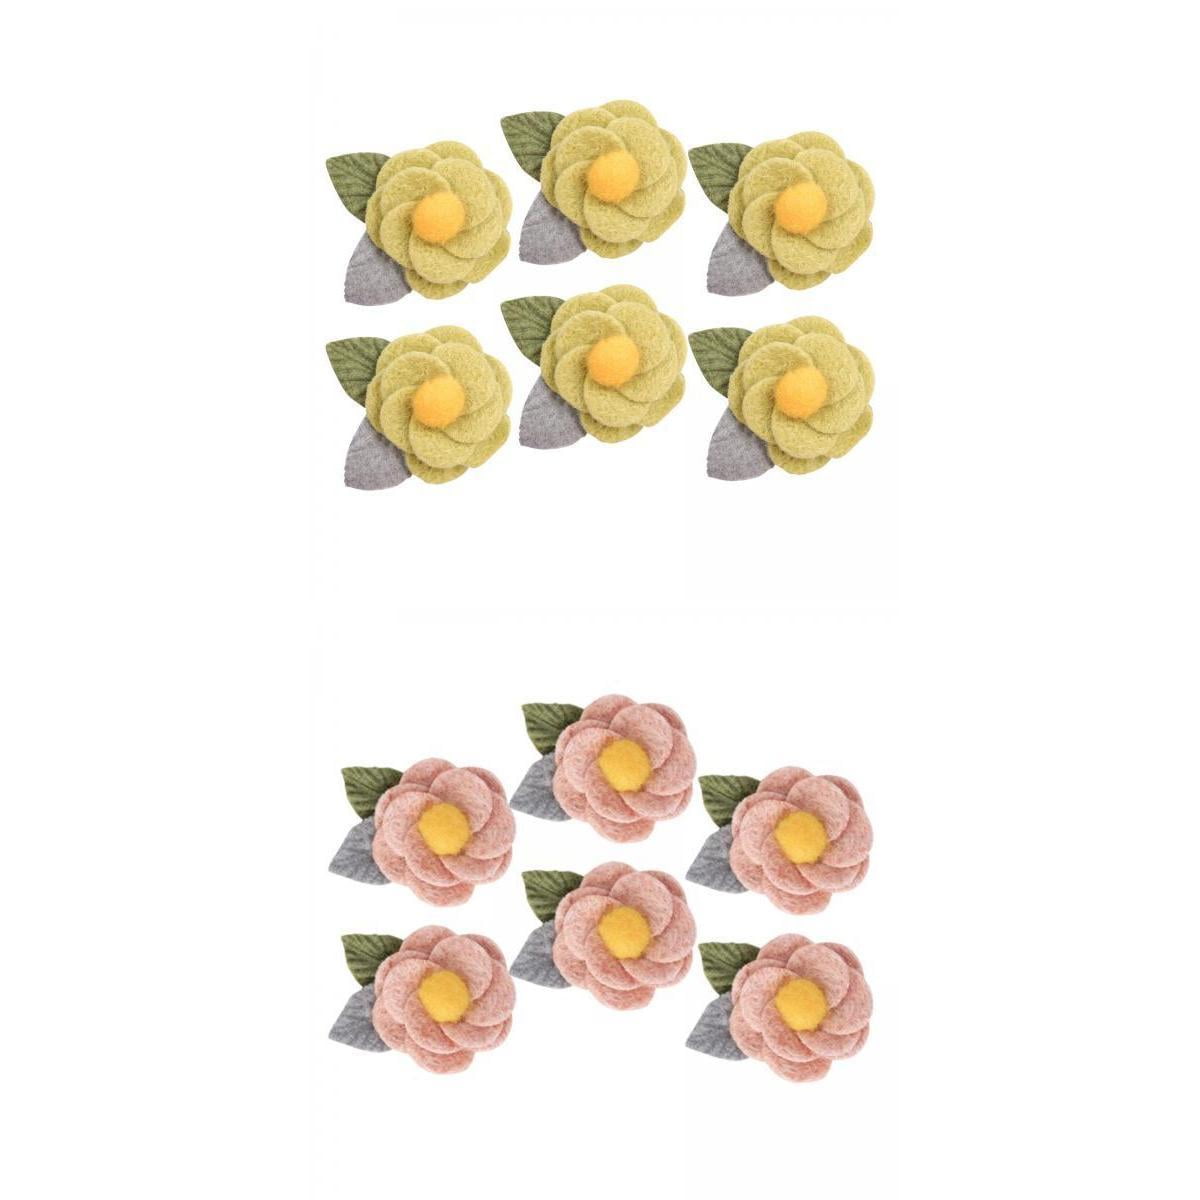 5 x Felt Flower Appliques/Patches Mixed Colours